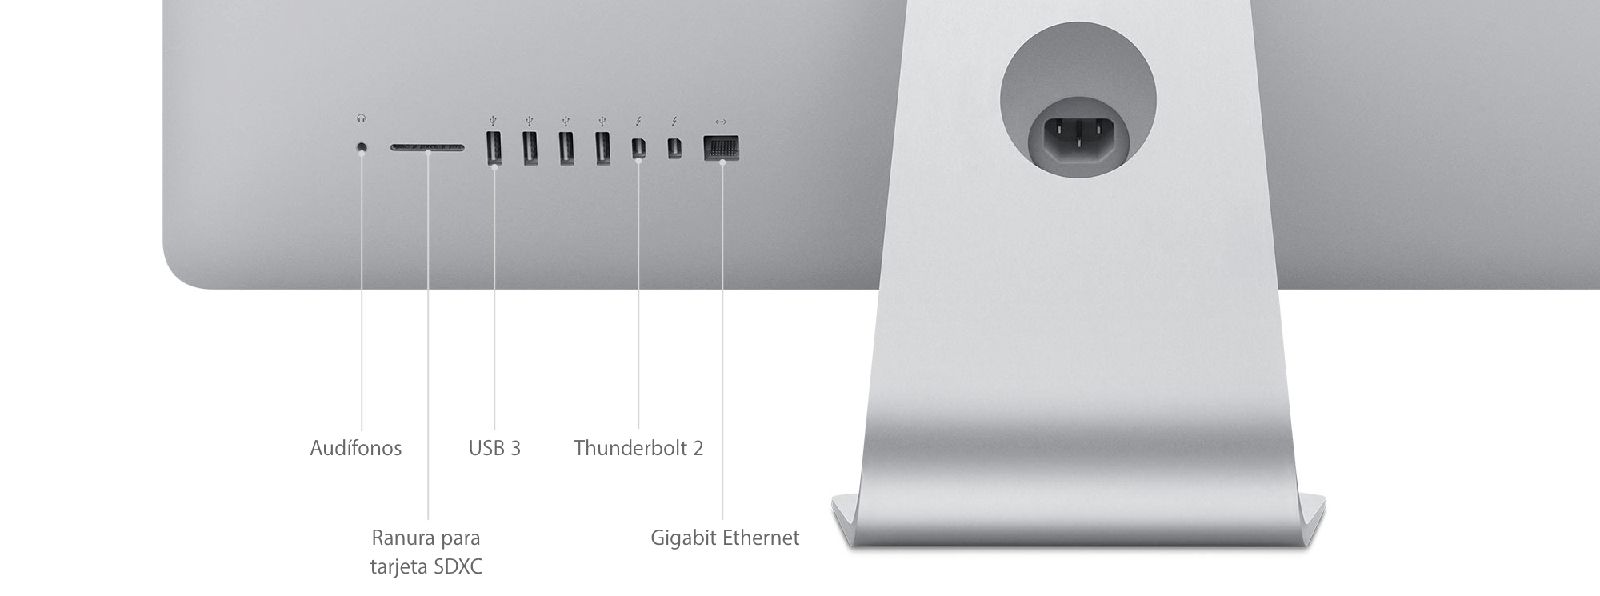 iMac (Retina 5K, 27 pulgadas, finales de 2015) - Especificaciones técnicas